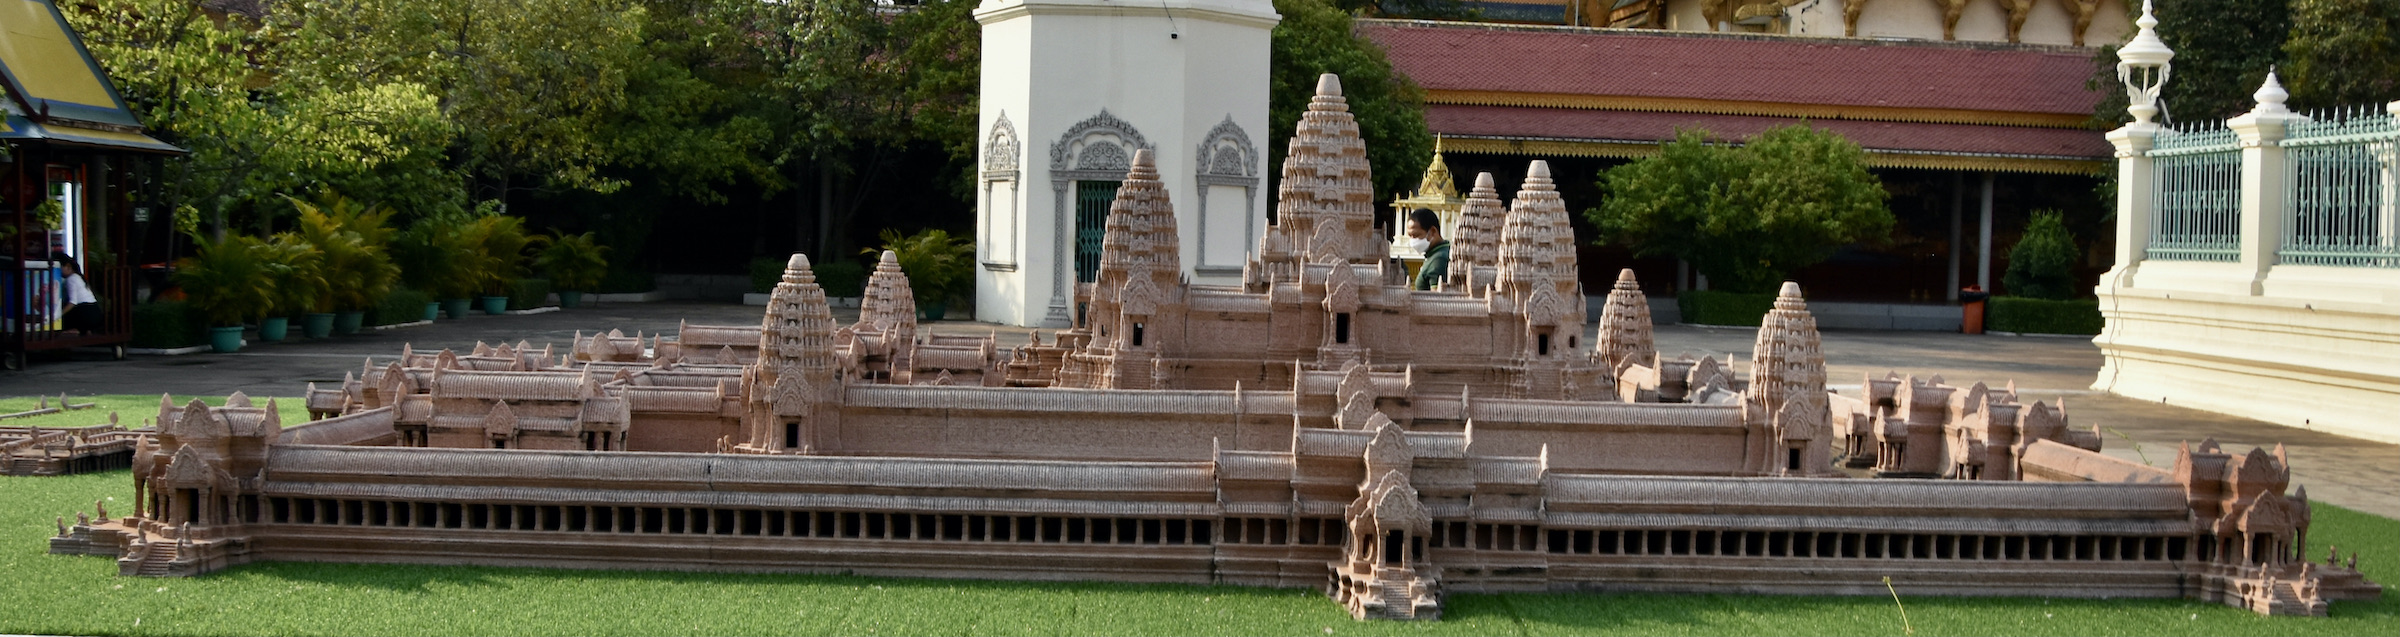 Model of Angkor Wat, Phnom Penh